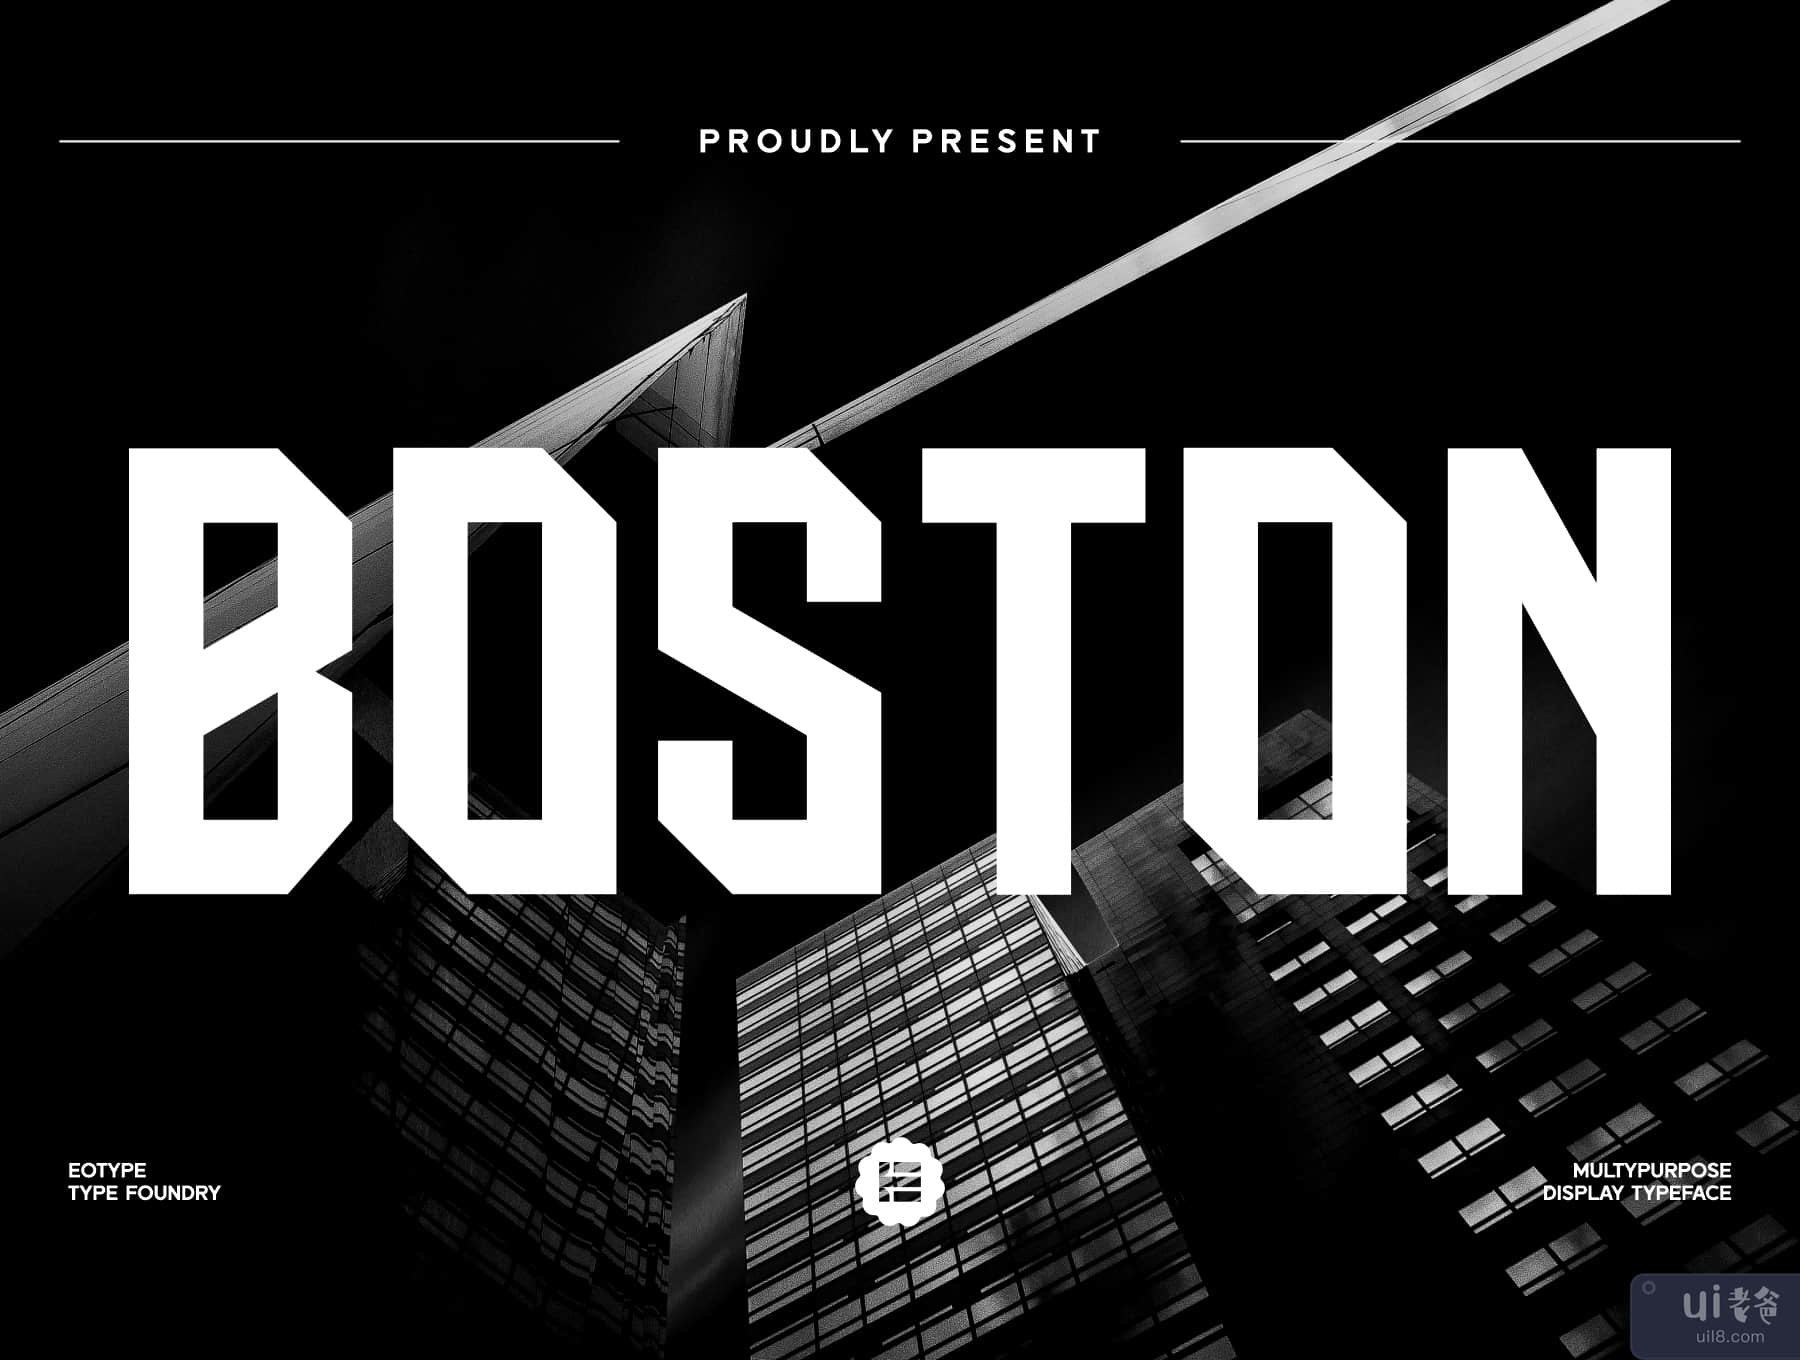 波士顿 - Dispaly 字体 (Boston - Dispaly Typeface)插图5